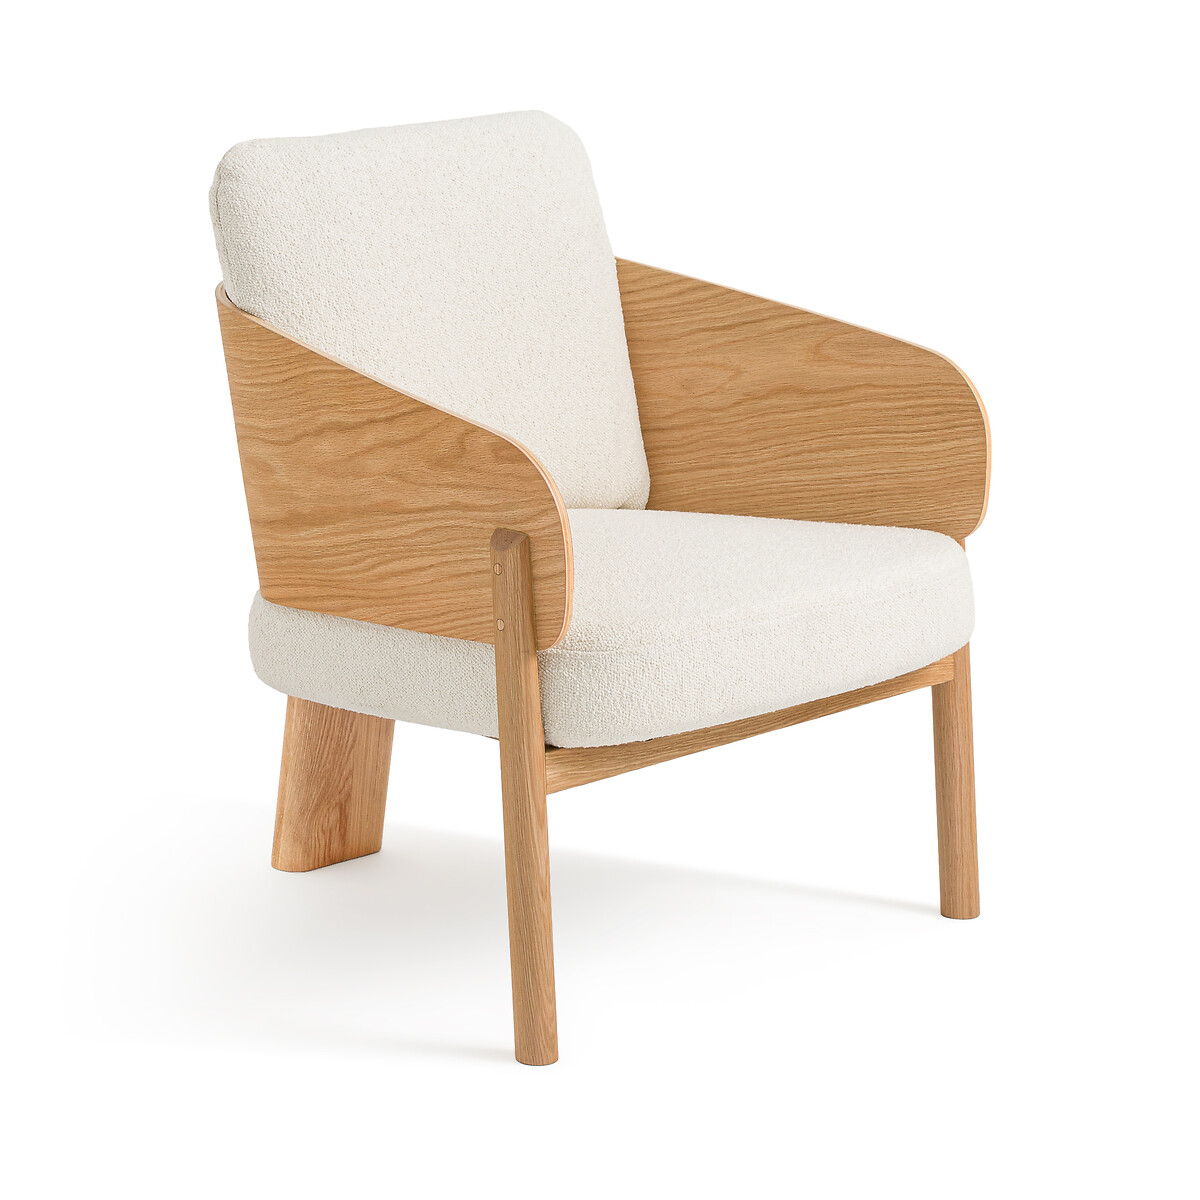 Кресло из дуба ткани букле Marais дизайн Э Галлина единый размер бежевый кресло из орехового дерева ткани букле дизайн э галлина marais единый размер зеленый